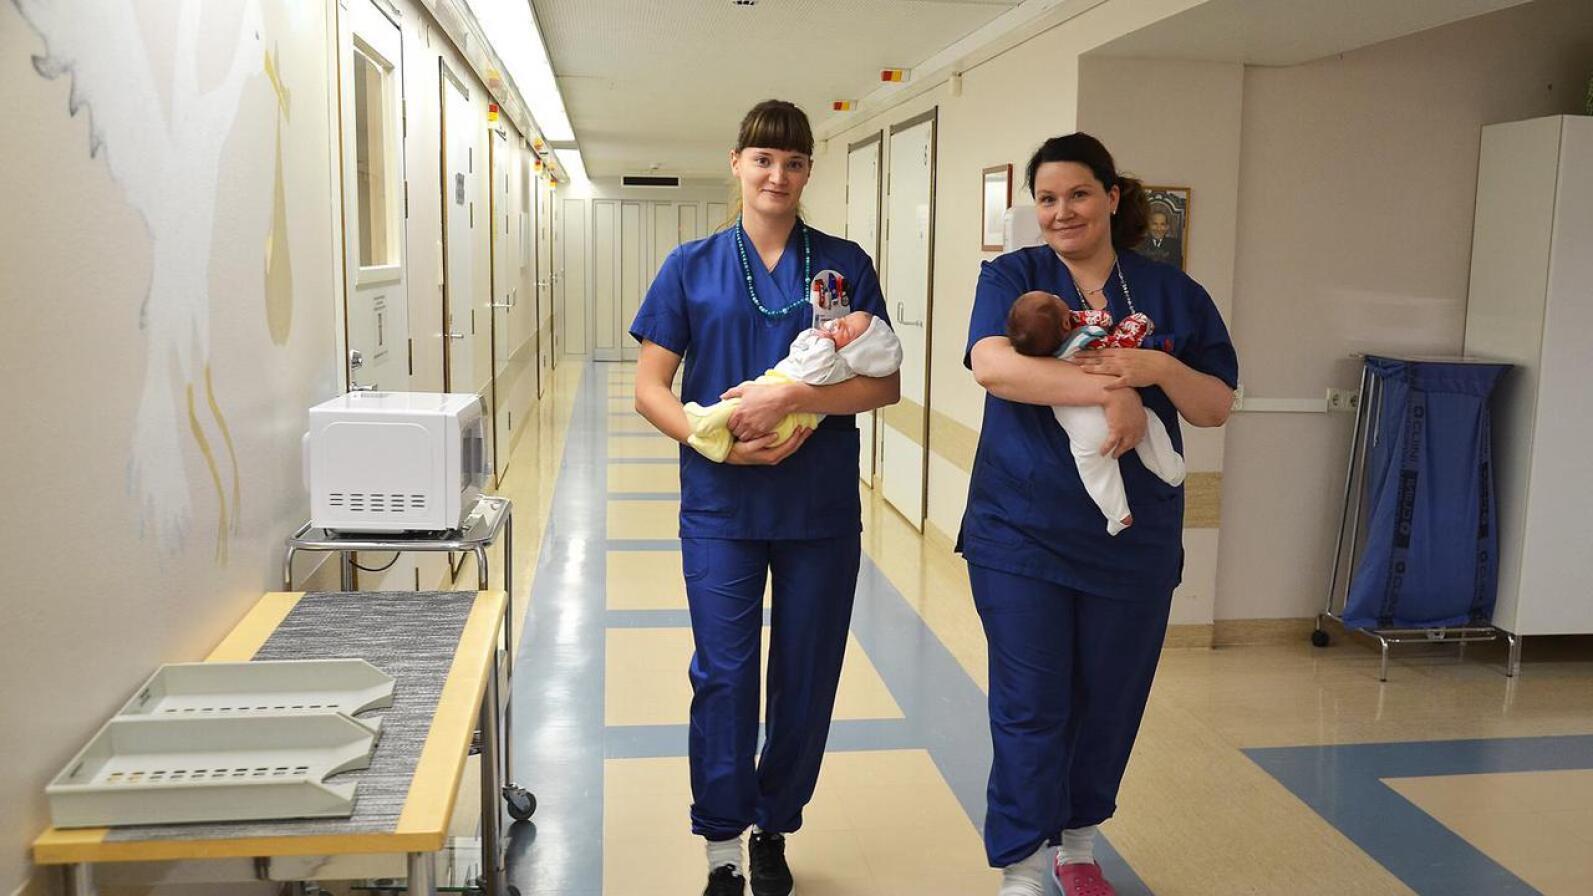 Oulaskankaan alueen kunnat ja kuntayhtymät vetoavat perhe- ja peruspalveluministeri Annika Saarikkoon, jotta kätilöt saisivat kannella vauvoja Oulaskankaan synnytysosastolla tulevaisuudessakin.